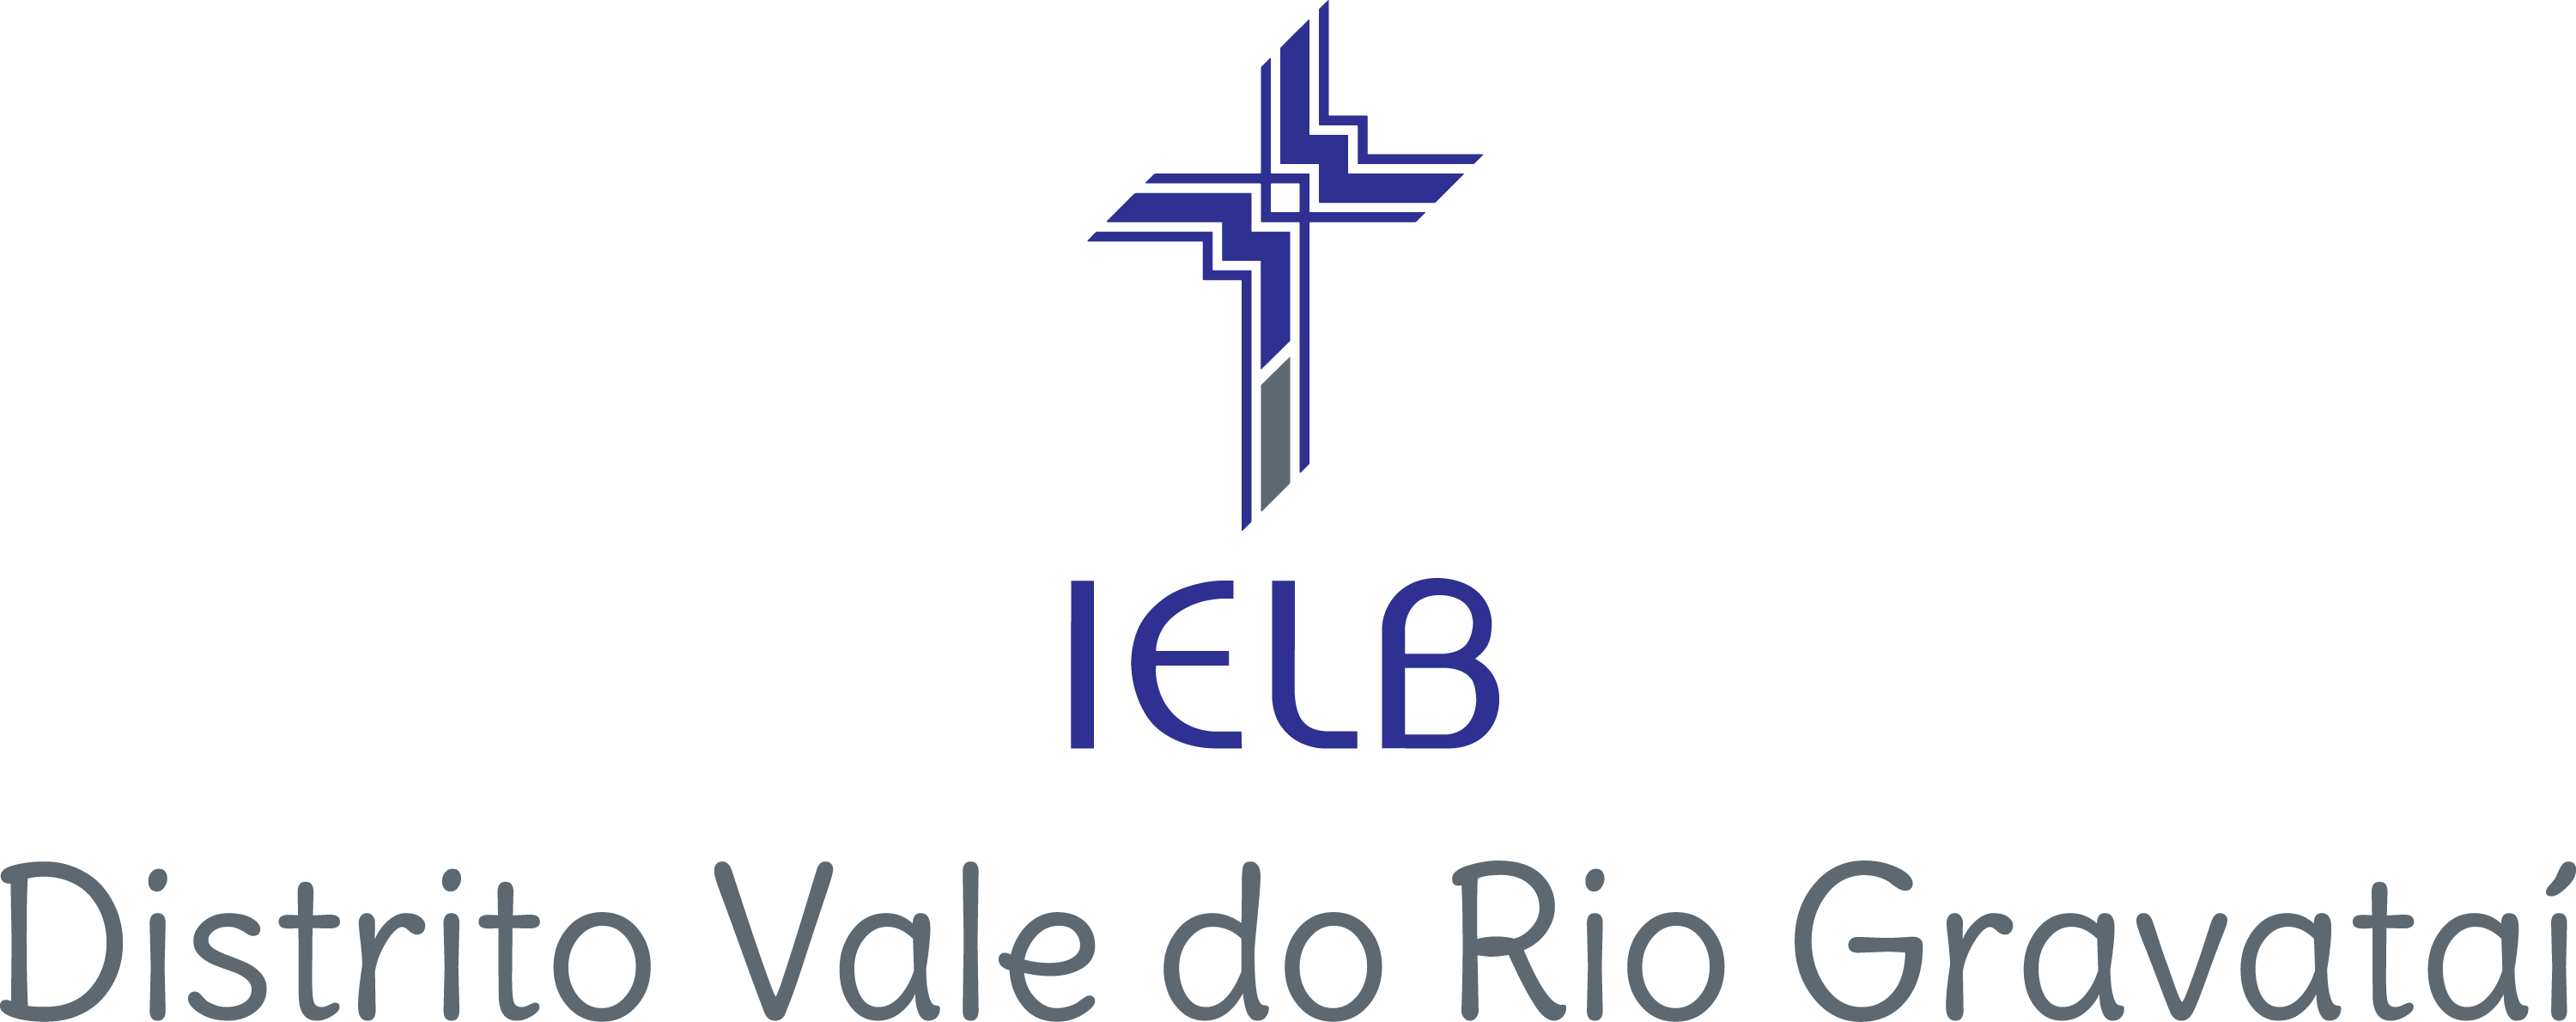 Assinatura visual - Região Sul - Vale do Rio Gravataí 